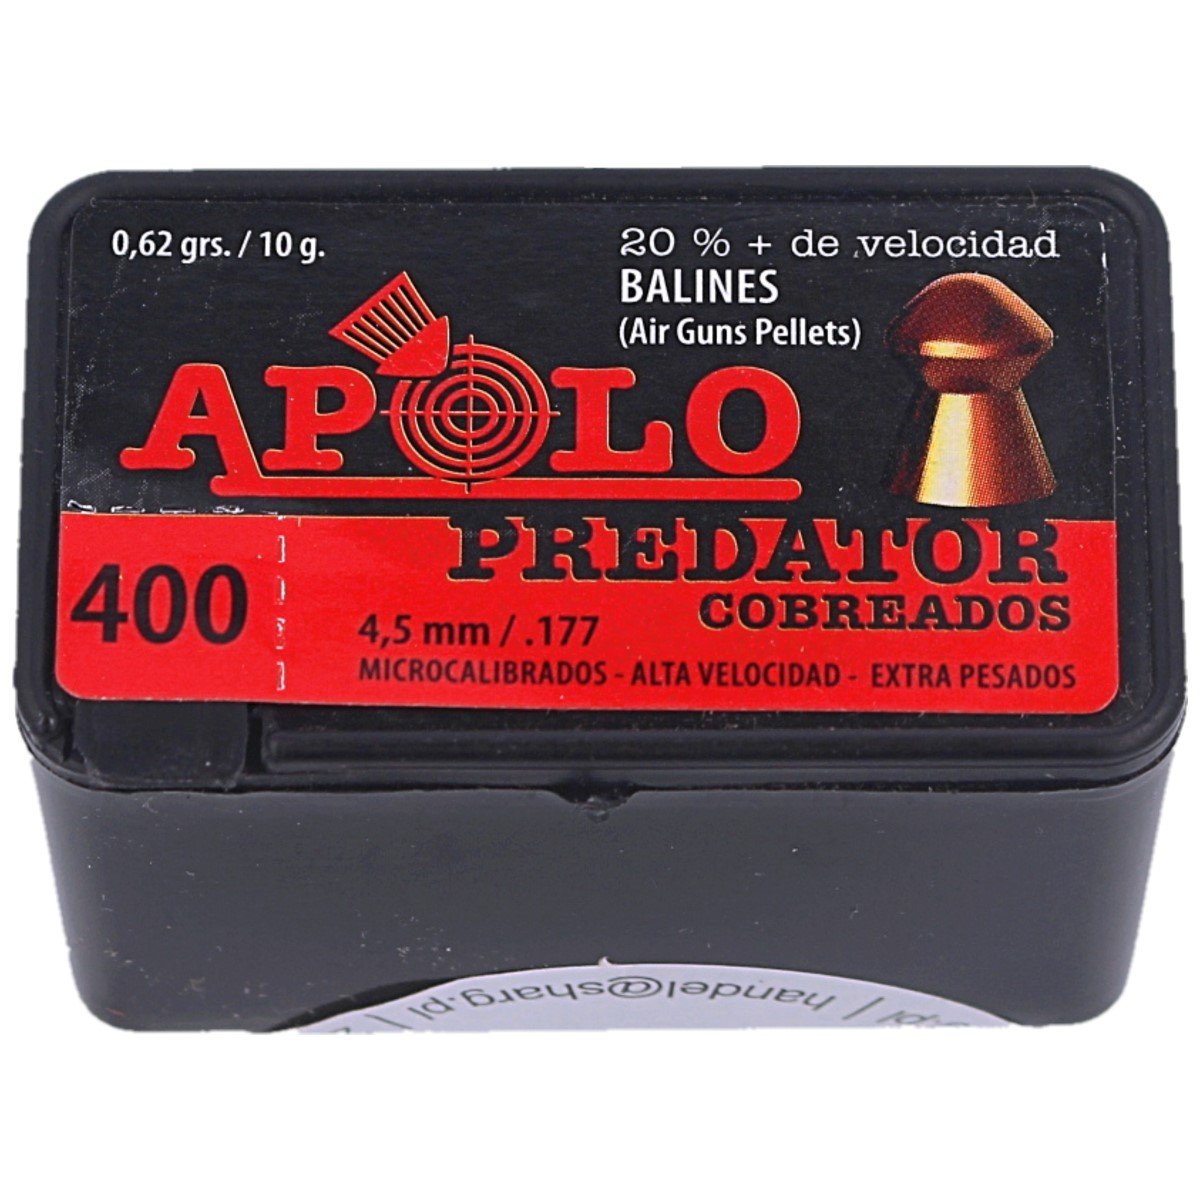 Śrut Apolo Premium Predator Copper 4.50mm, 400szt (E 19950)